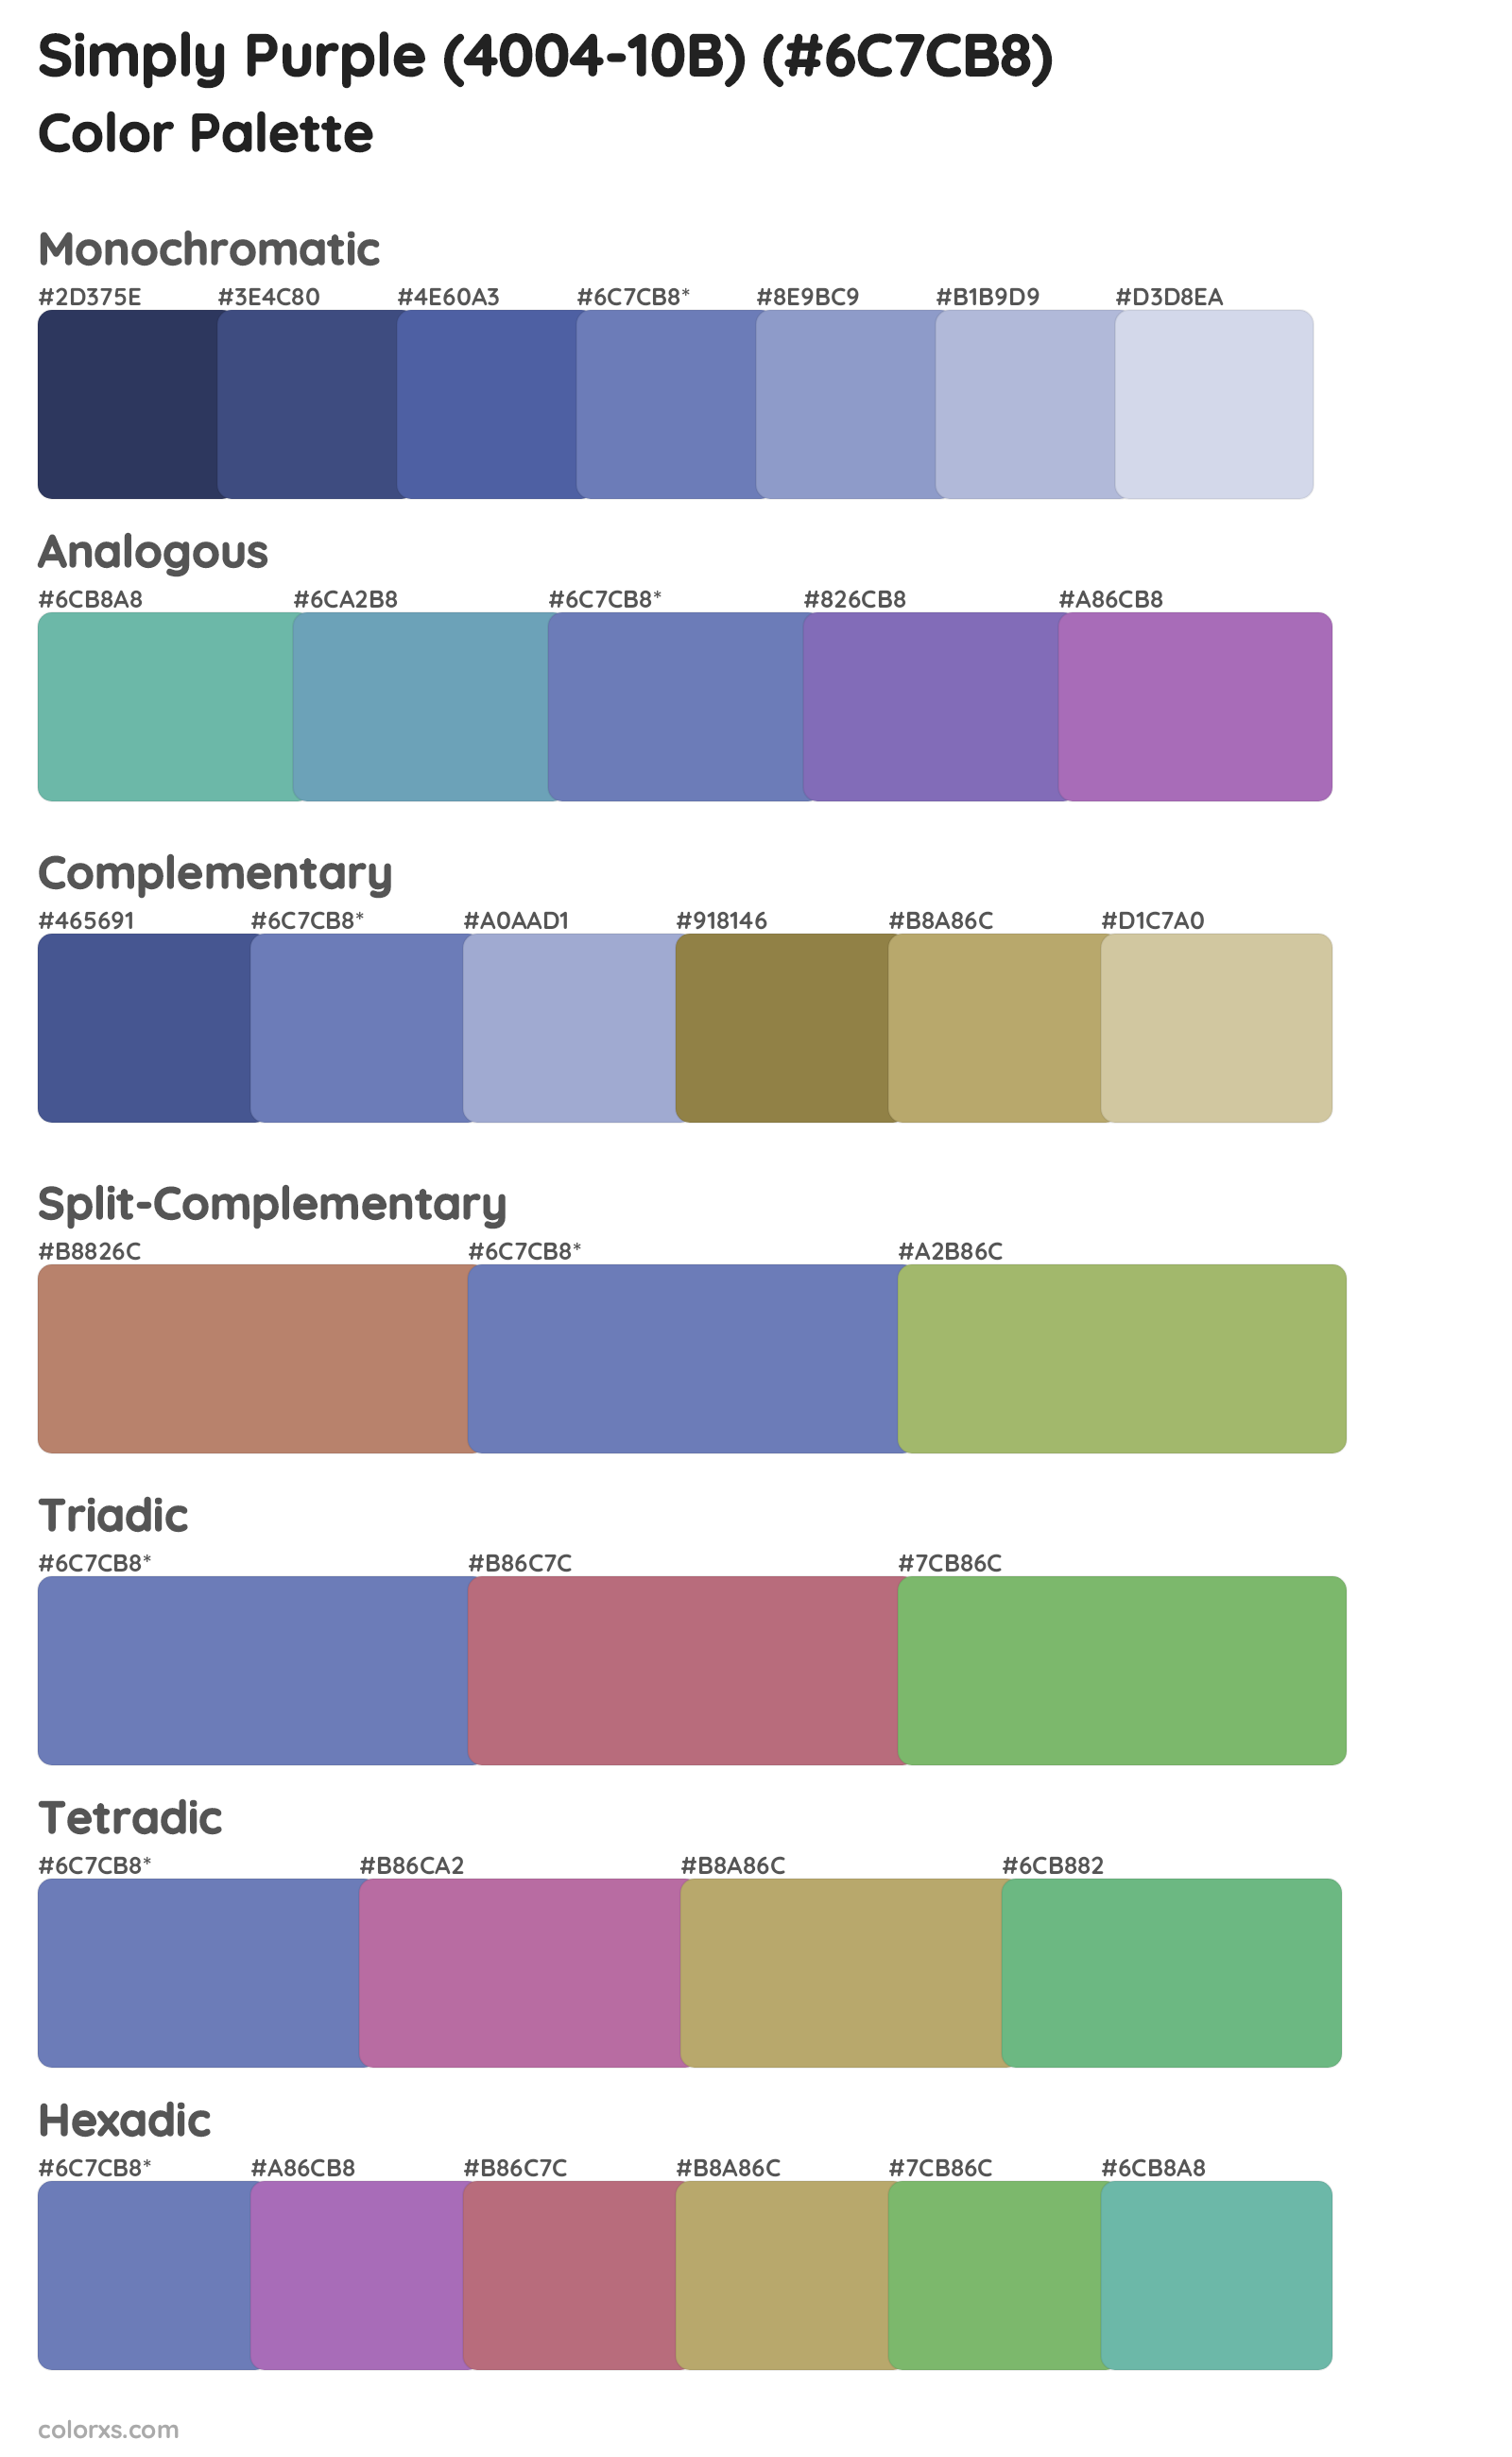 Simply Purple (4004-10B) Color Scheme Palettes